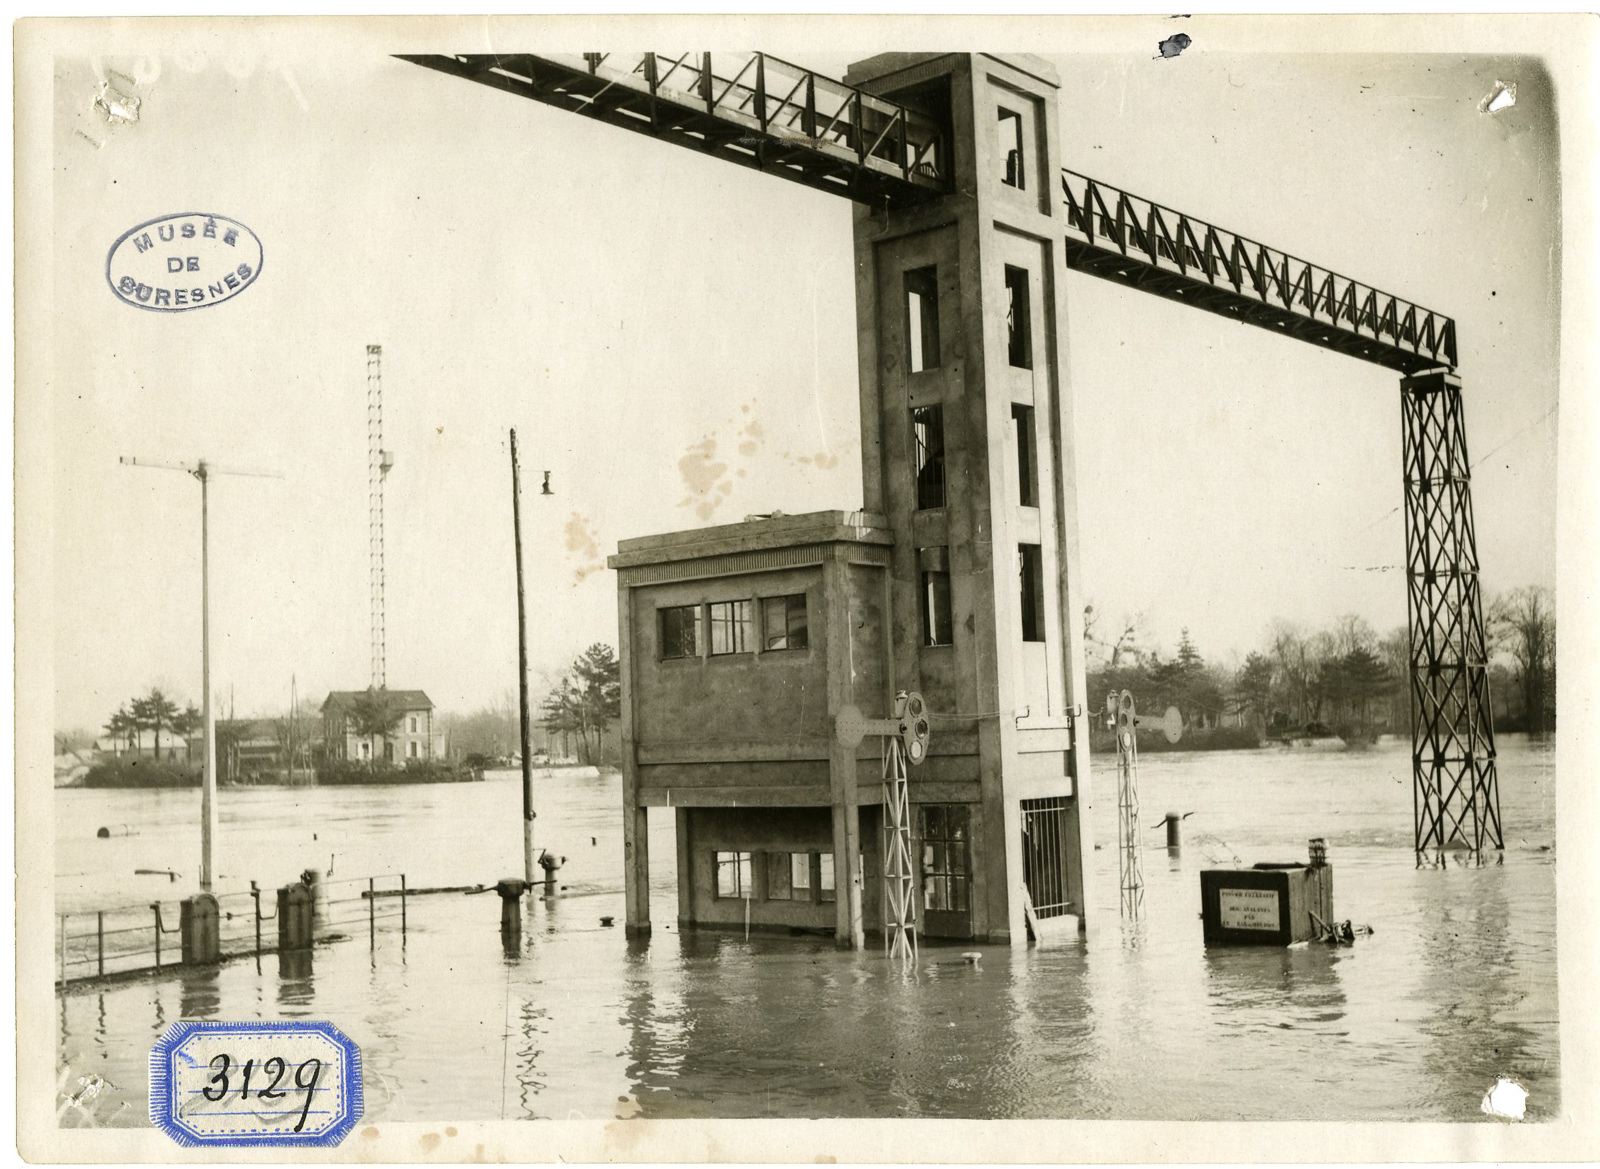 Les écluses de Suresnes, inondations de décembre 1930